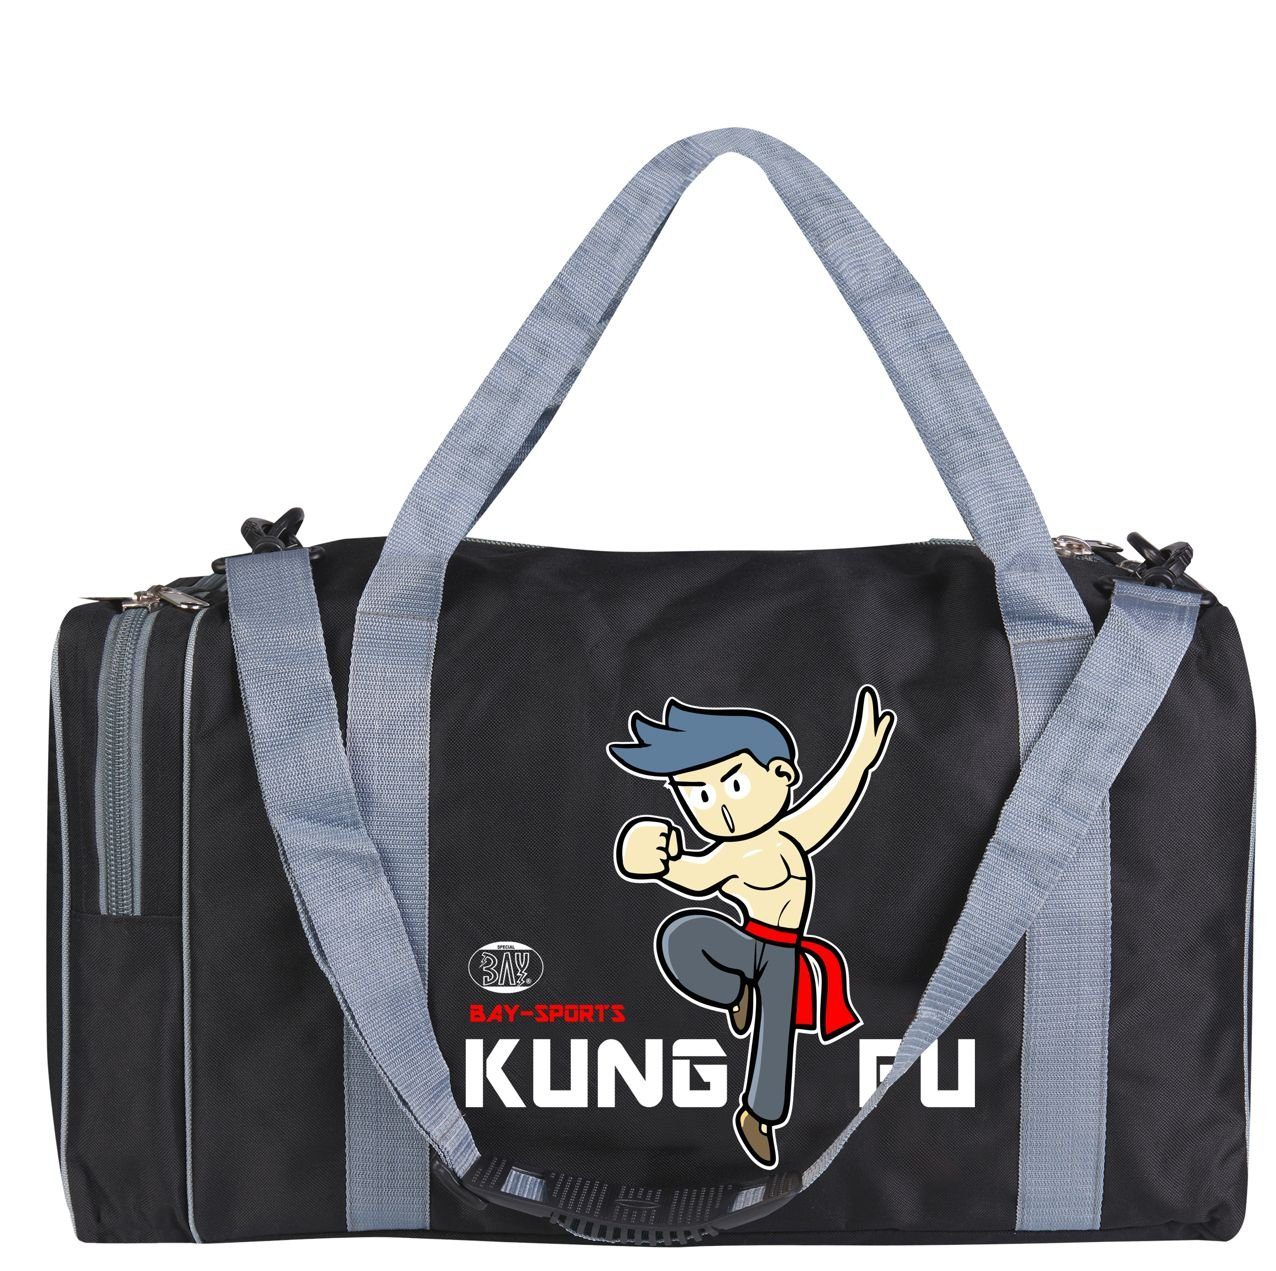 BAY-Sports Sporttasche Sporttasche für Kinder Kung Fu schwarz/grau 50 cm